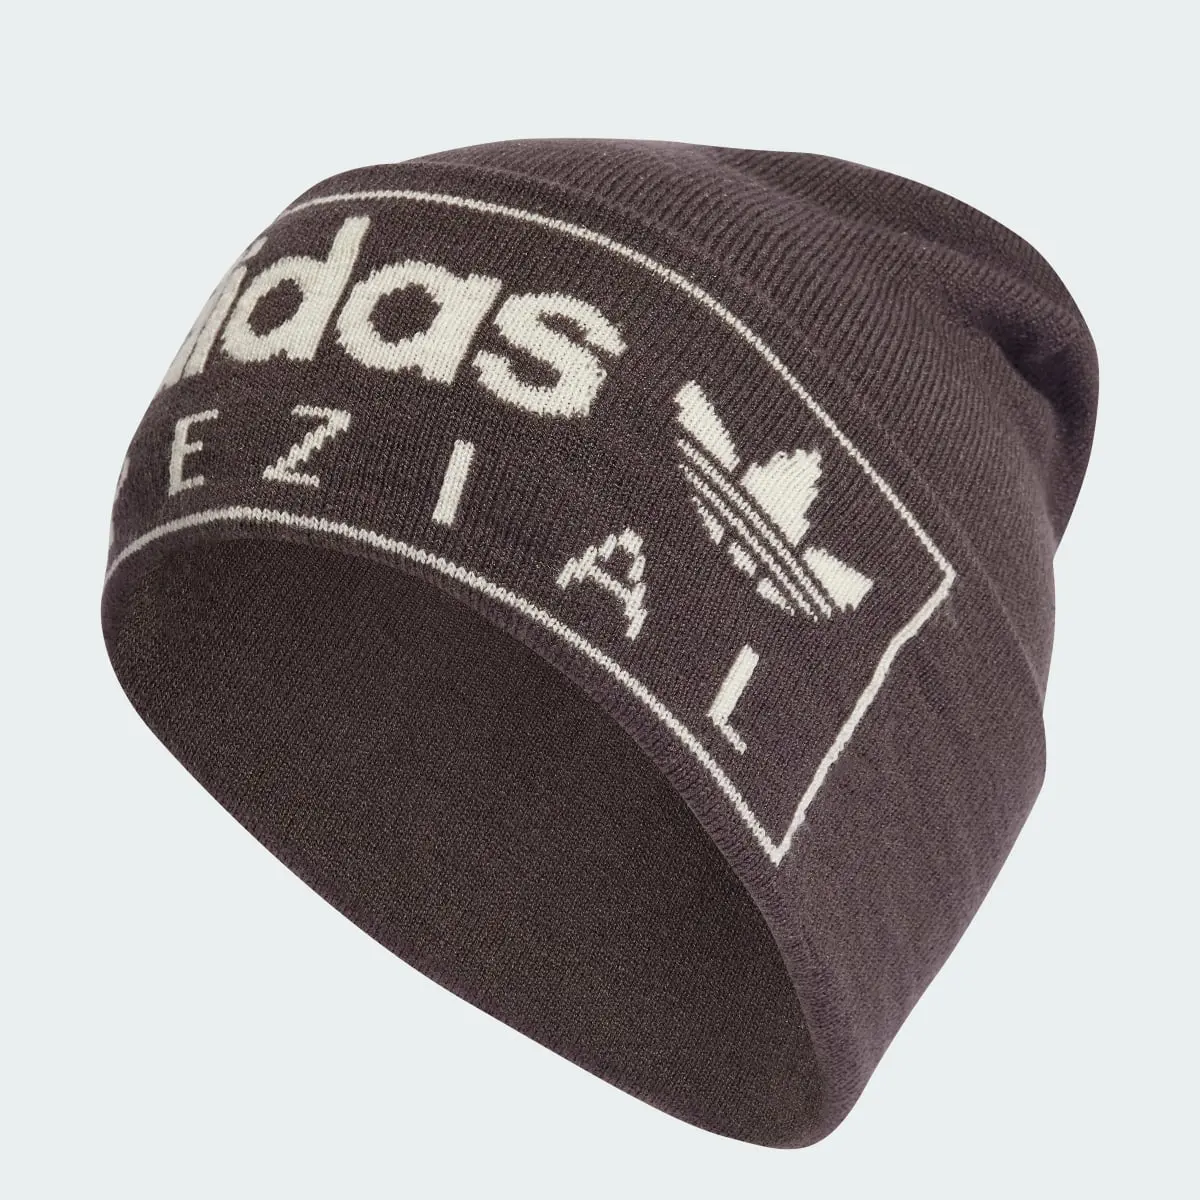 Adidas Spezial Cap. 1